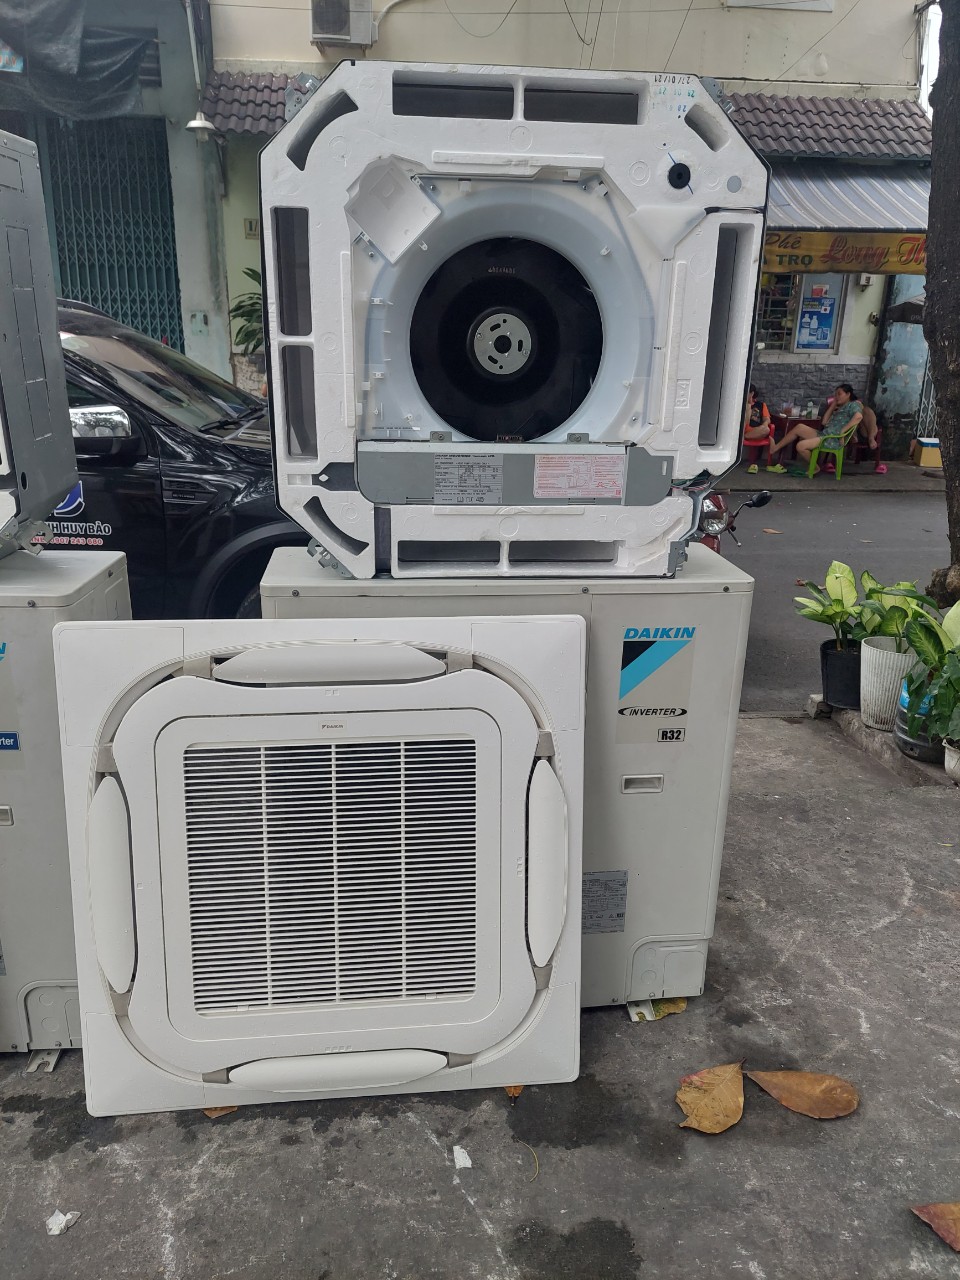 Chuyên bán máy lạnh cũ sẵn sàng phục vụ và cung cấp các dòng máy lạnh/máy điều hòa Nhật Bản cũ chất lượng nhất với giá cả phù hợp nhất cho bà con, gia đình ở Tp.HCM